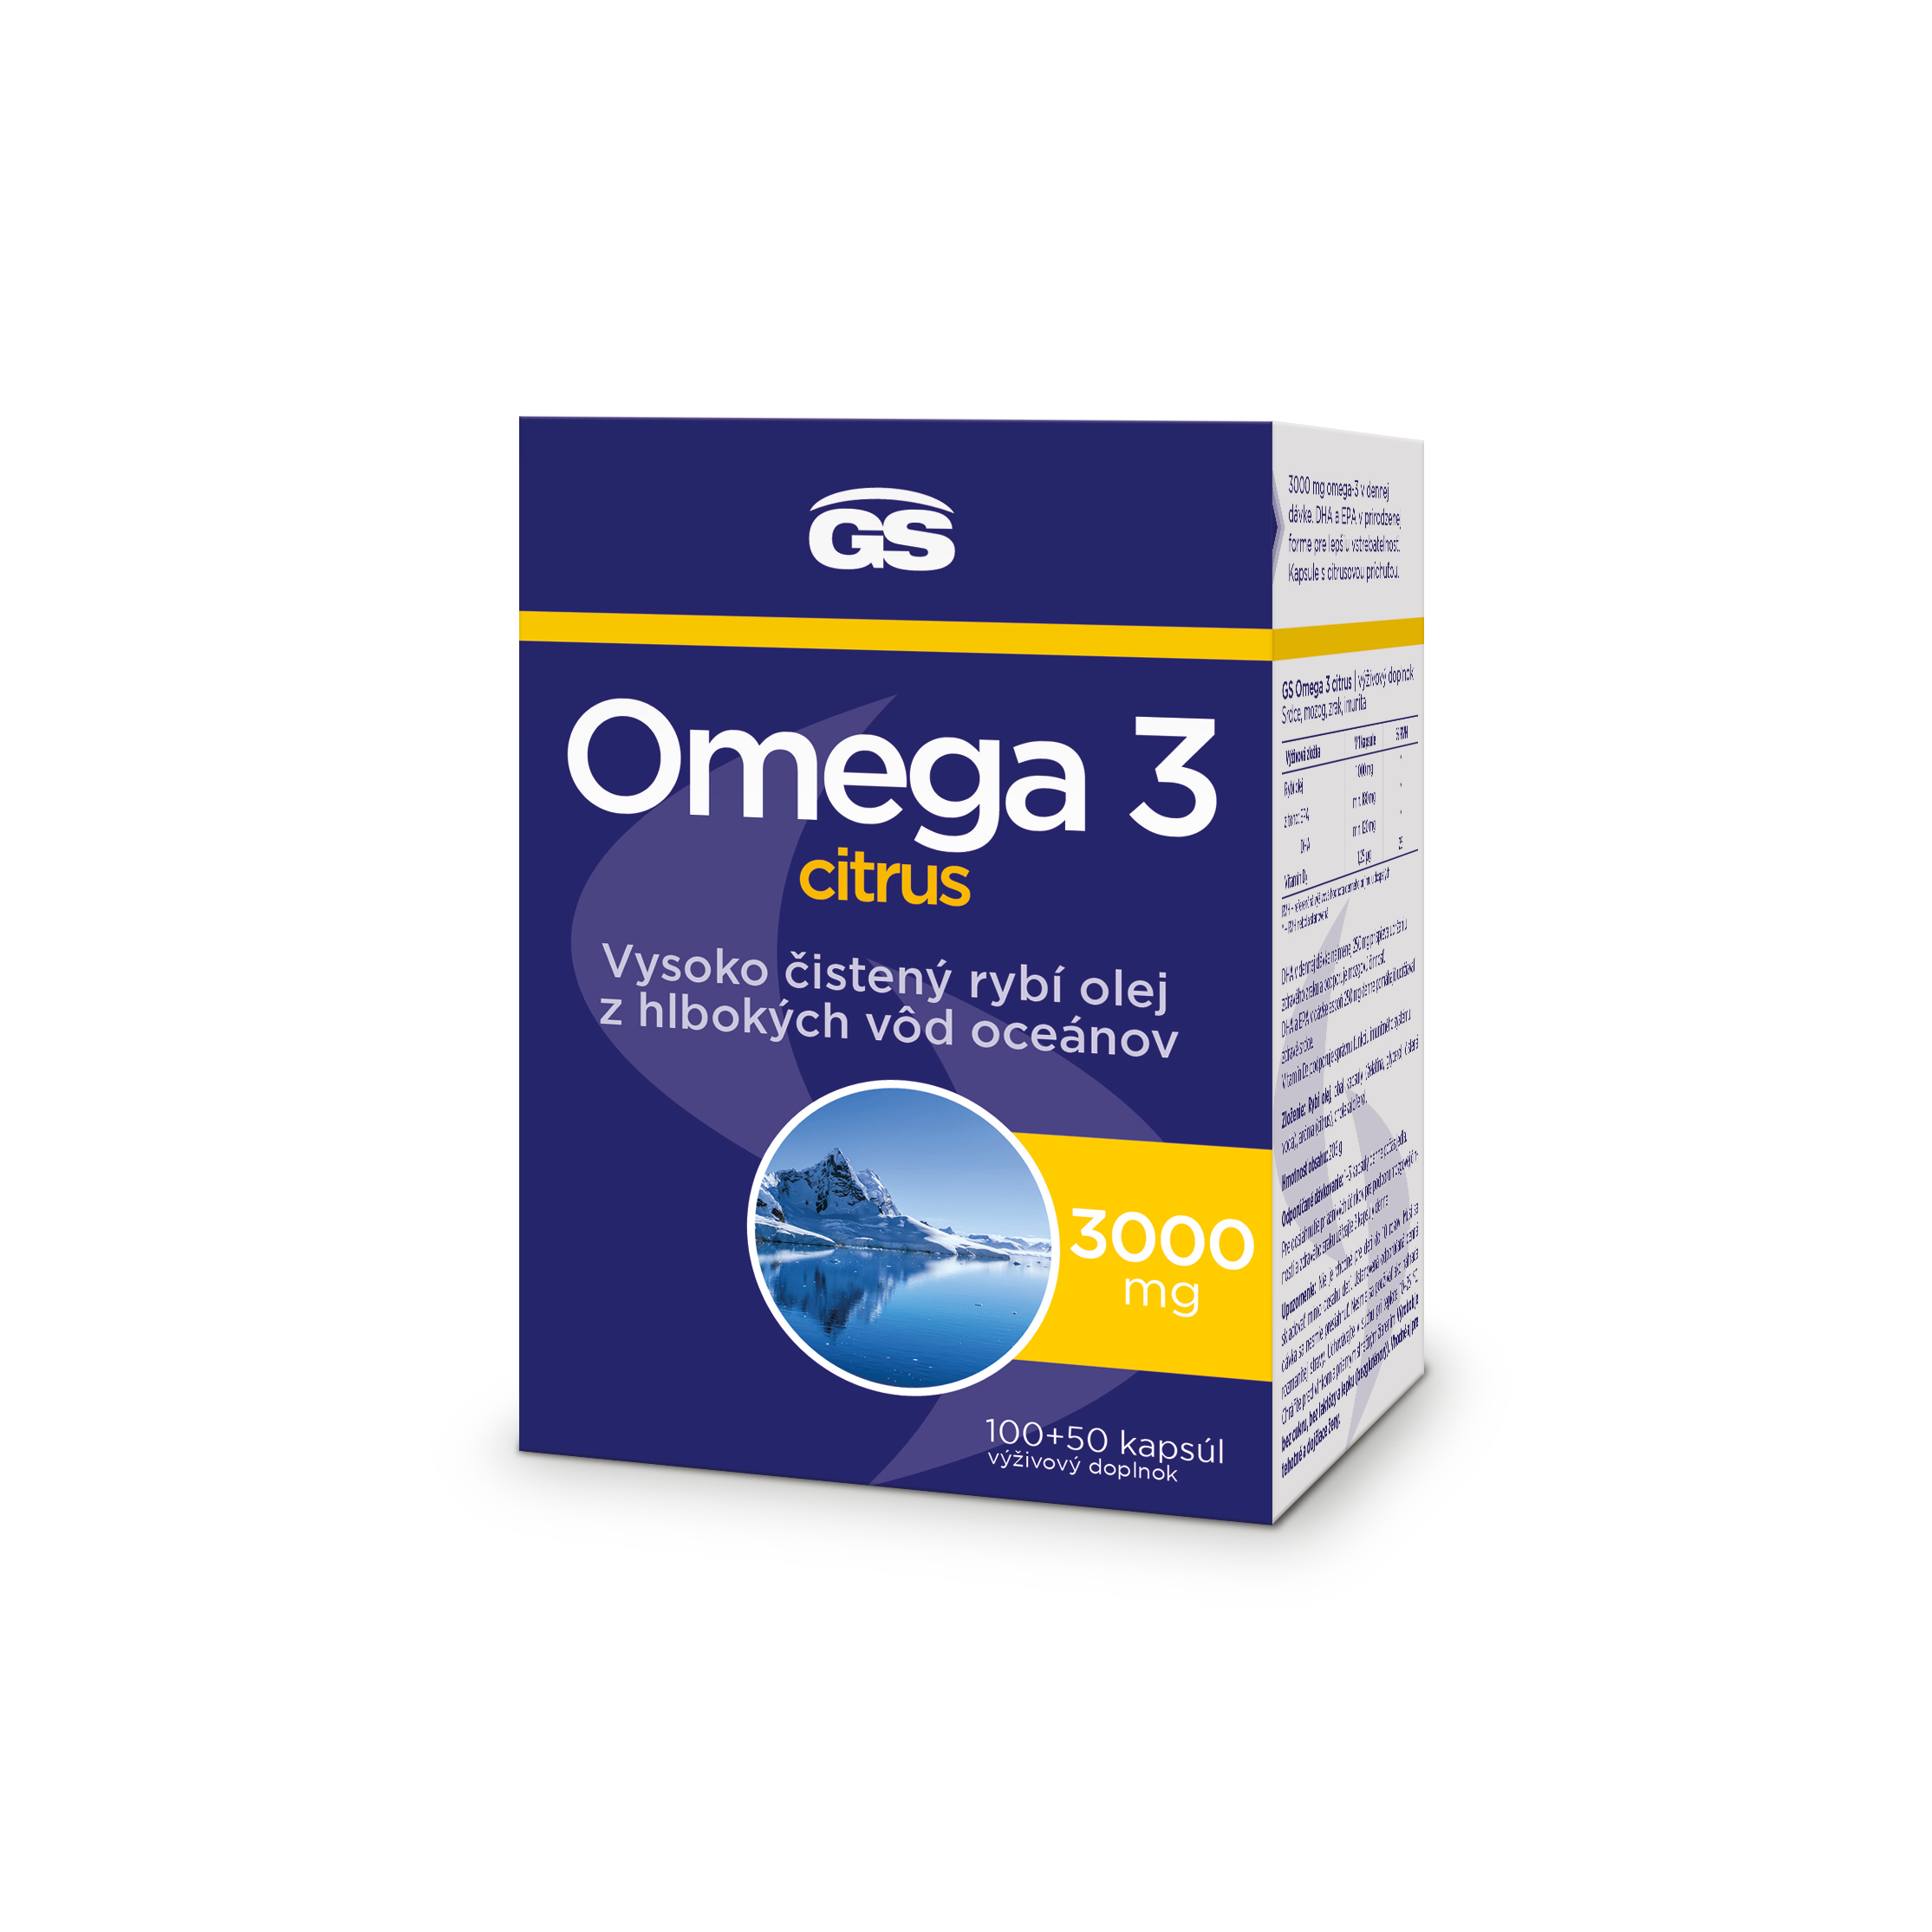 GS Omega 3 citrus, 10050 kapsúl